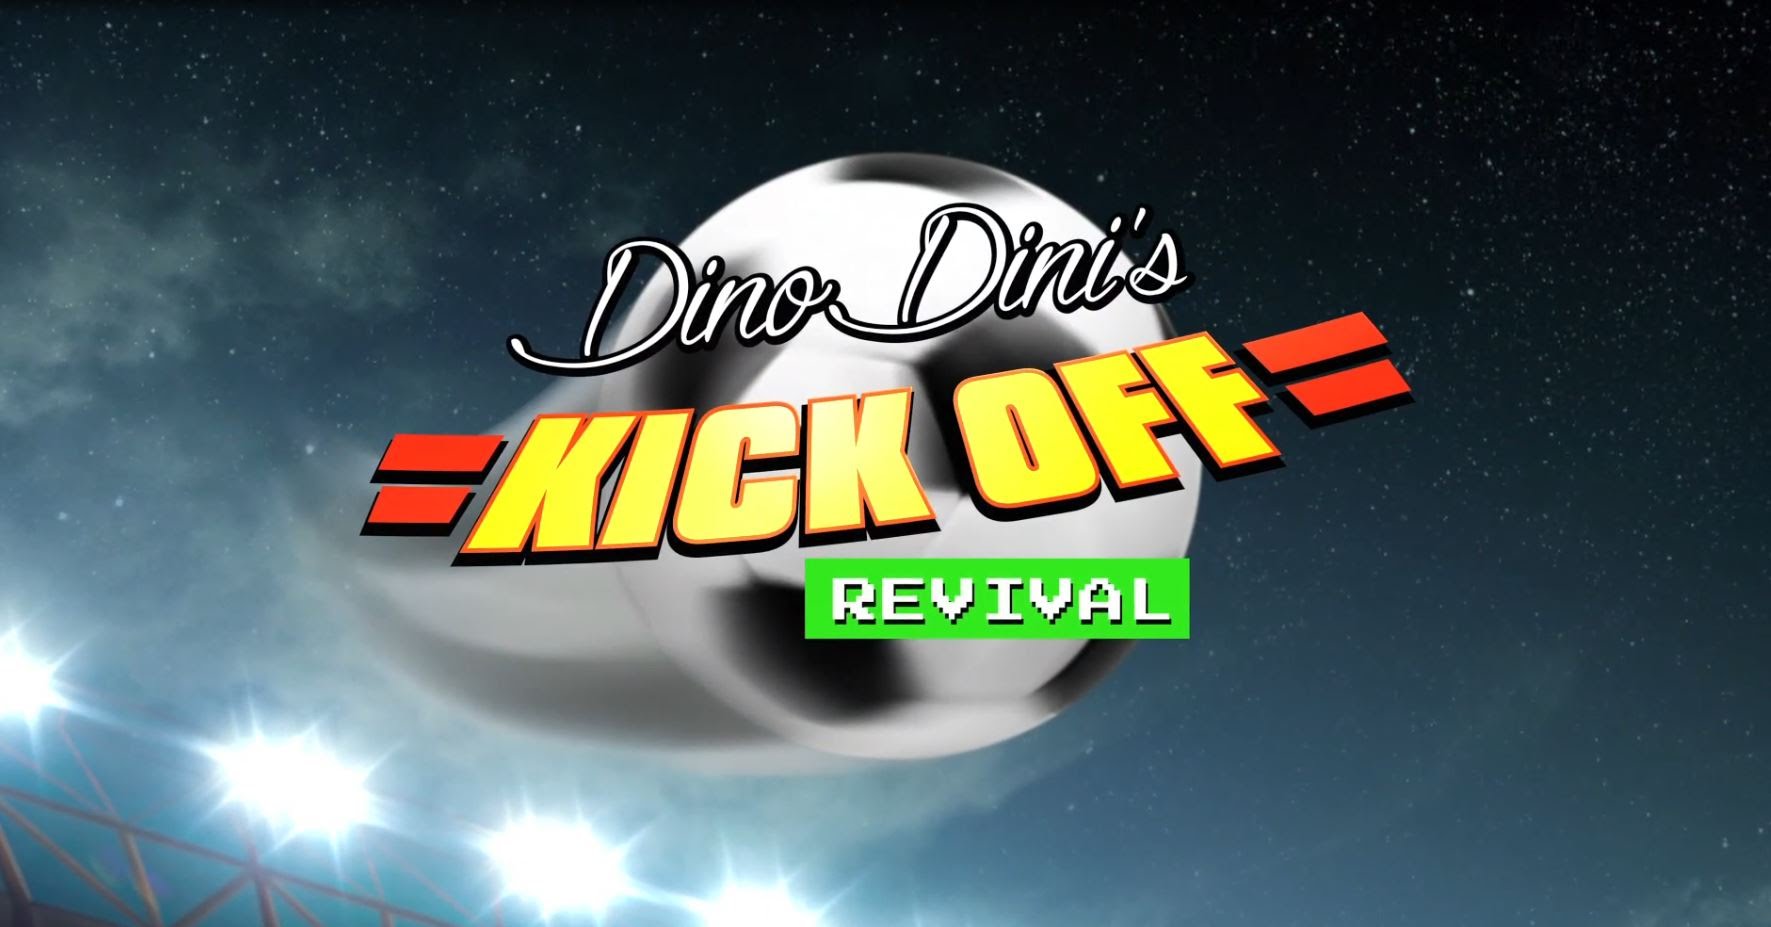 La versión de PS Vita de Dino Dini’s Kick Off Revival llega a PlayStation Store